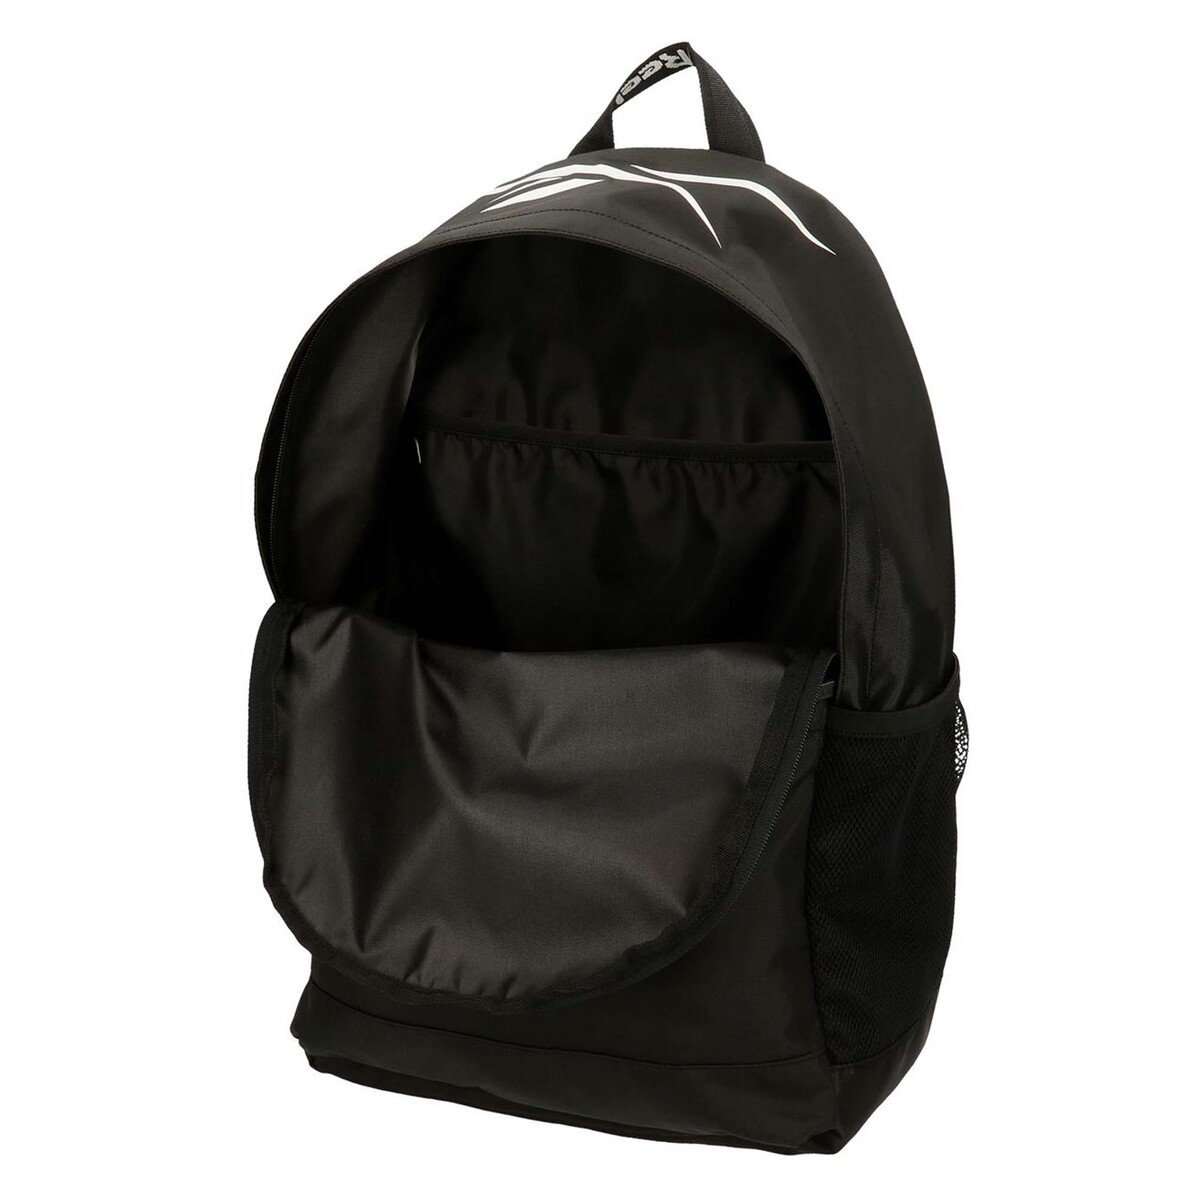 Reebok Backpack 45cm 8852321 Black